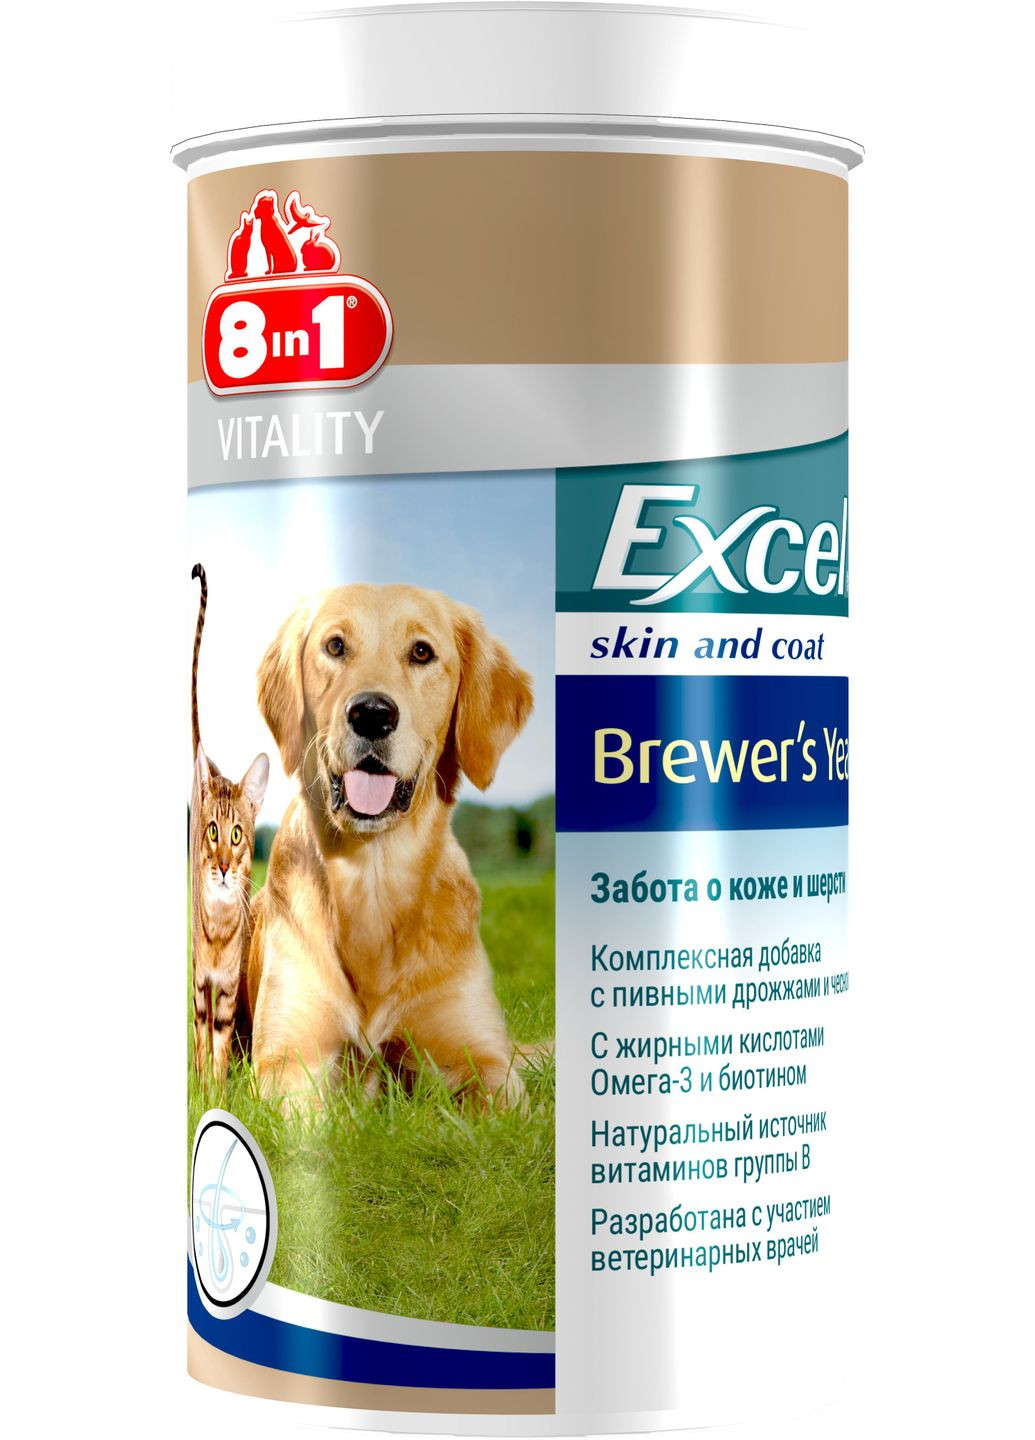 Пивні дріжджі Excel Brewers Yeast для котів і собак таблетки 1430 шт (4048422115731) 8in1 (279562317)